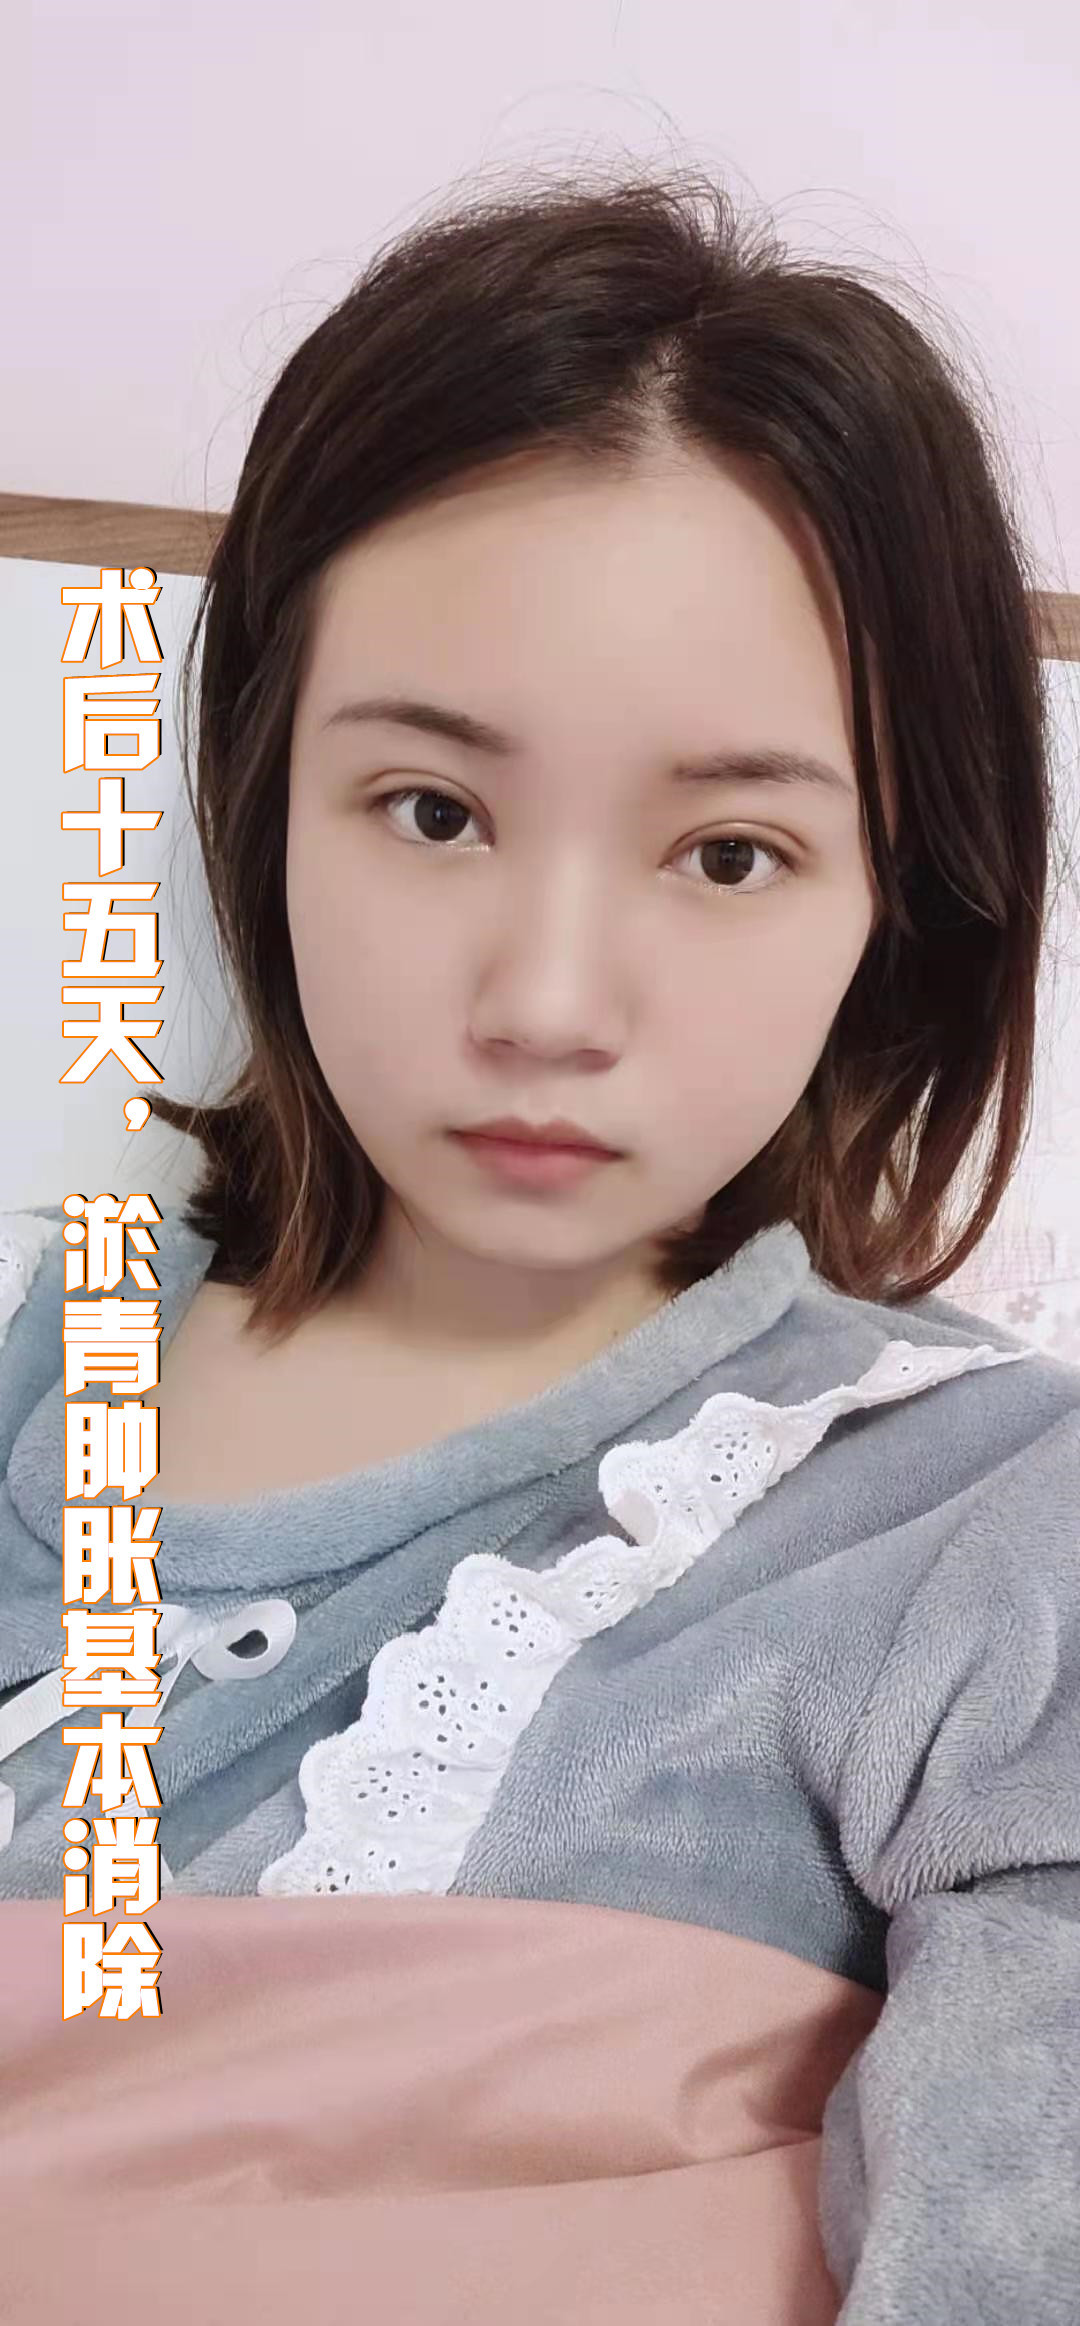 今天给大家分享的是一位来自重庆的姑娘,姑娘天生单眼_圈子-新氧美容